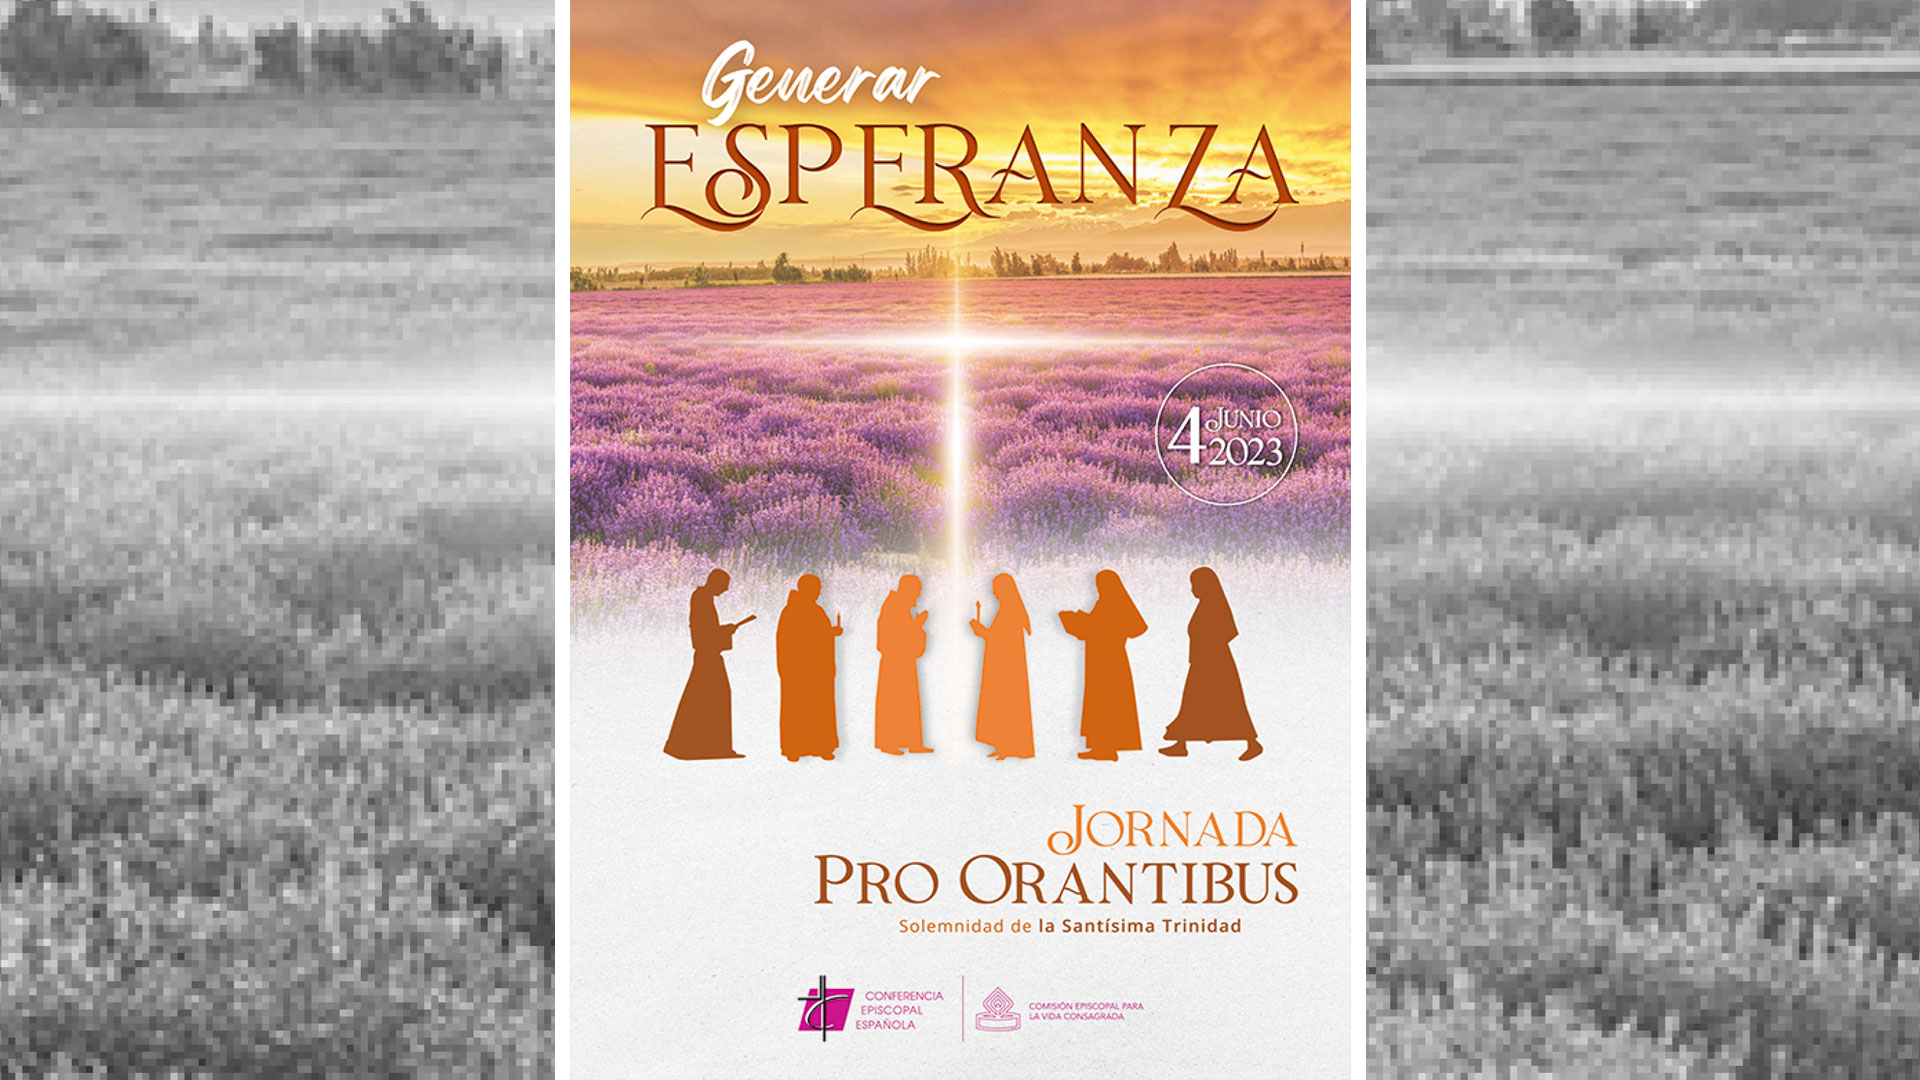 «Generar esperanza» - Jornada Pro Orantibus